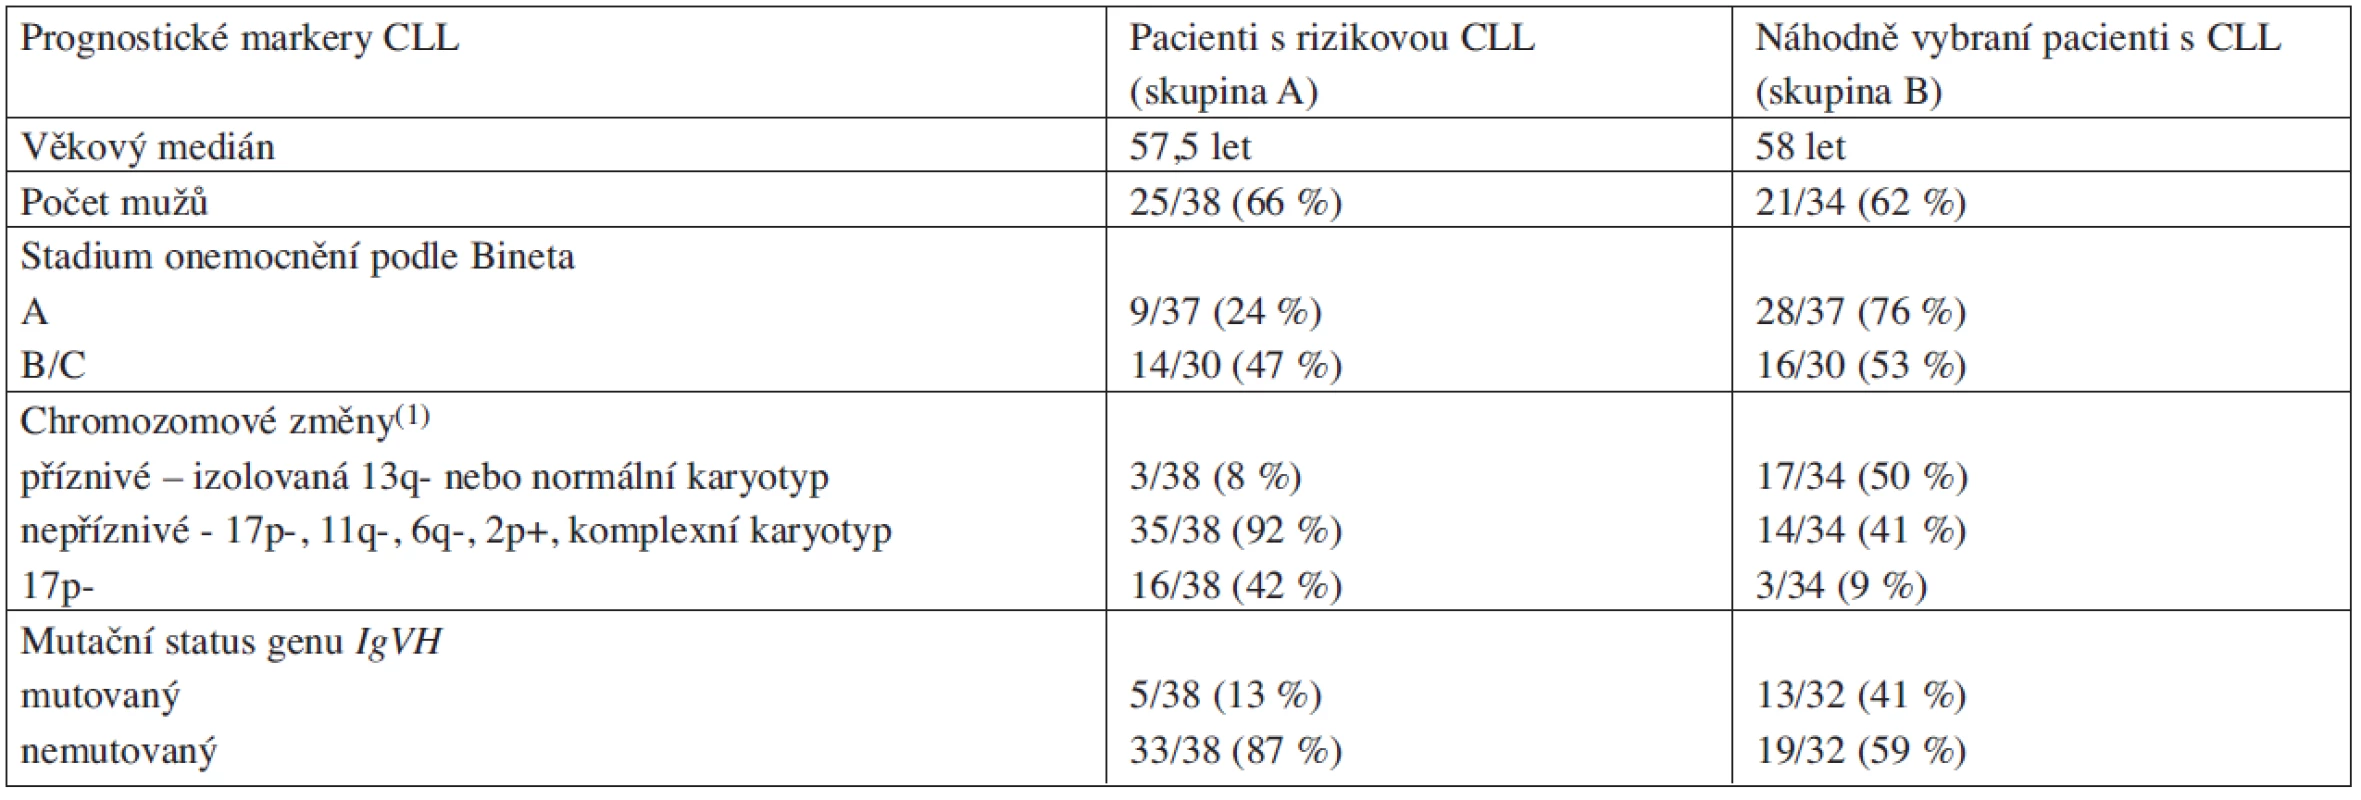 Klinická a laboratorní charakteristika vyšetřovaných pacientů s CLL.